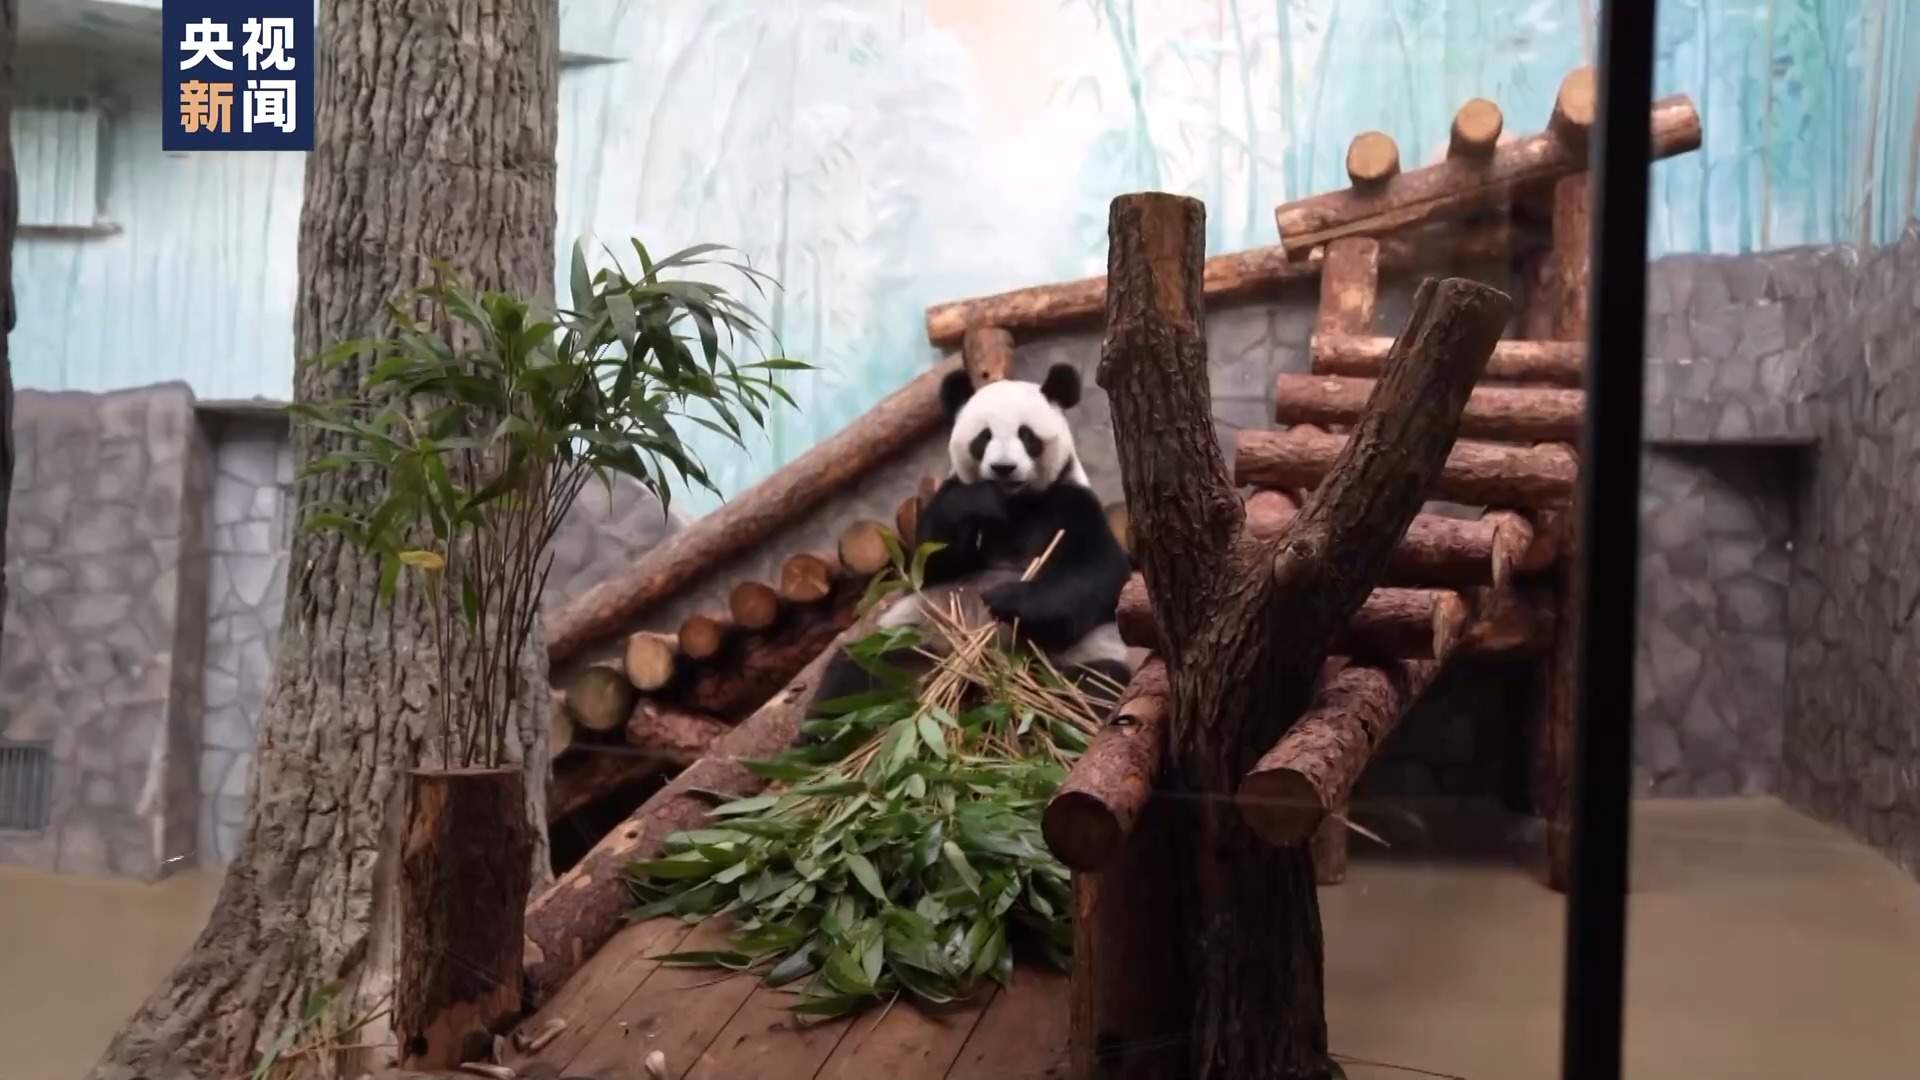 正在俄出生的大熊猫小崽与逛客初度碰面